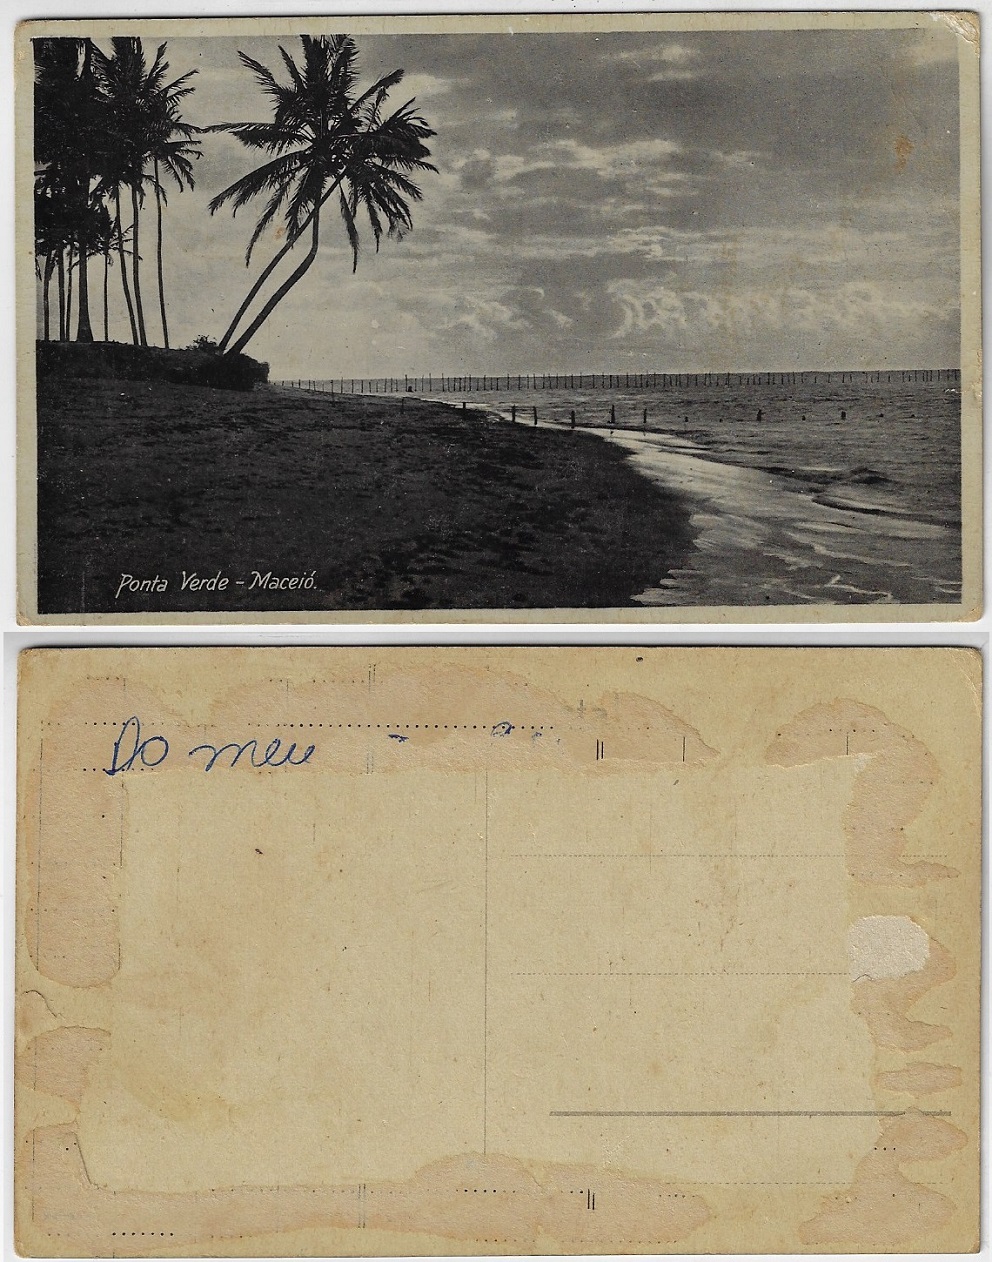 Cartão Postal Poços de Caldas, MG. Fonte Luminosa, 1942